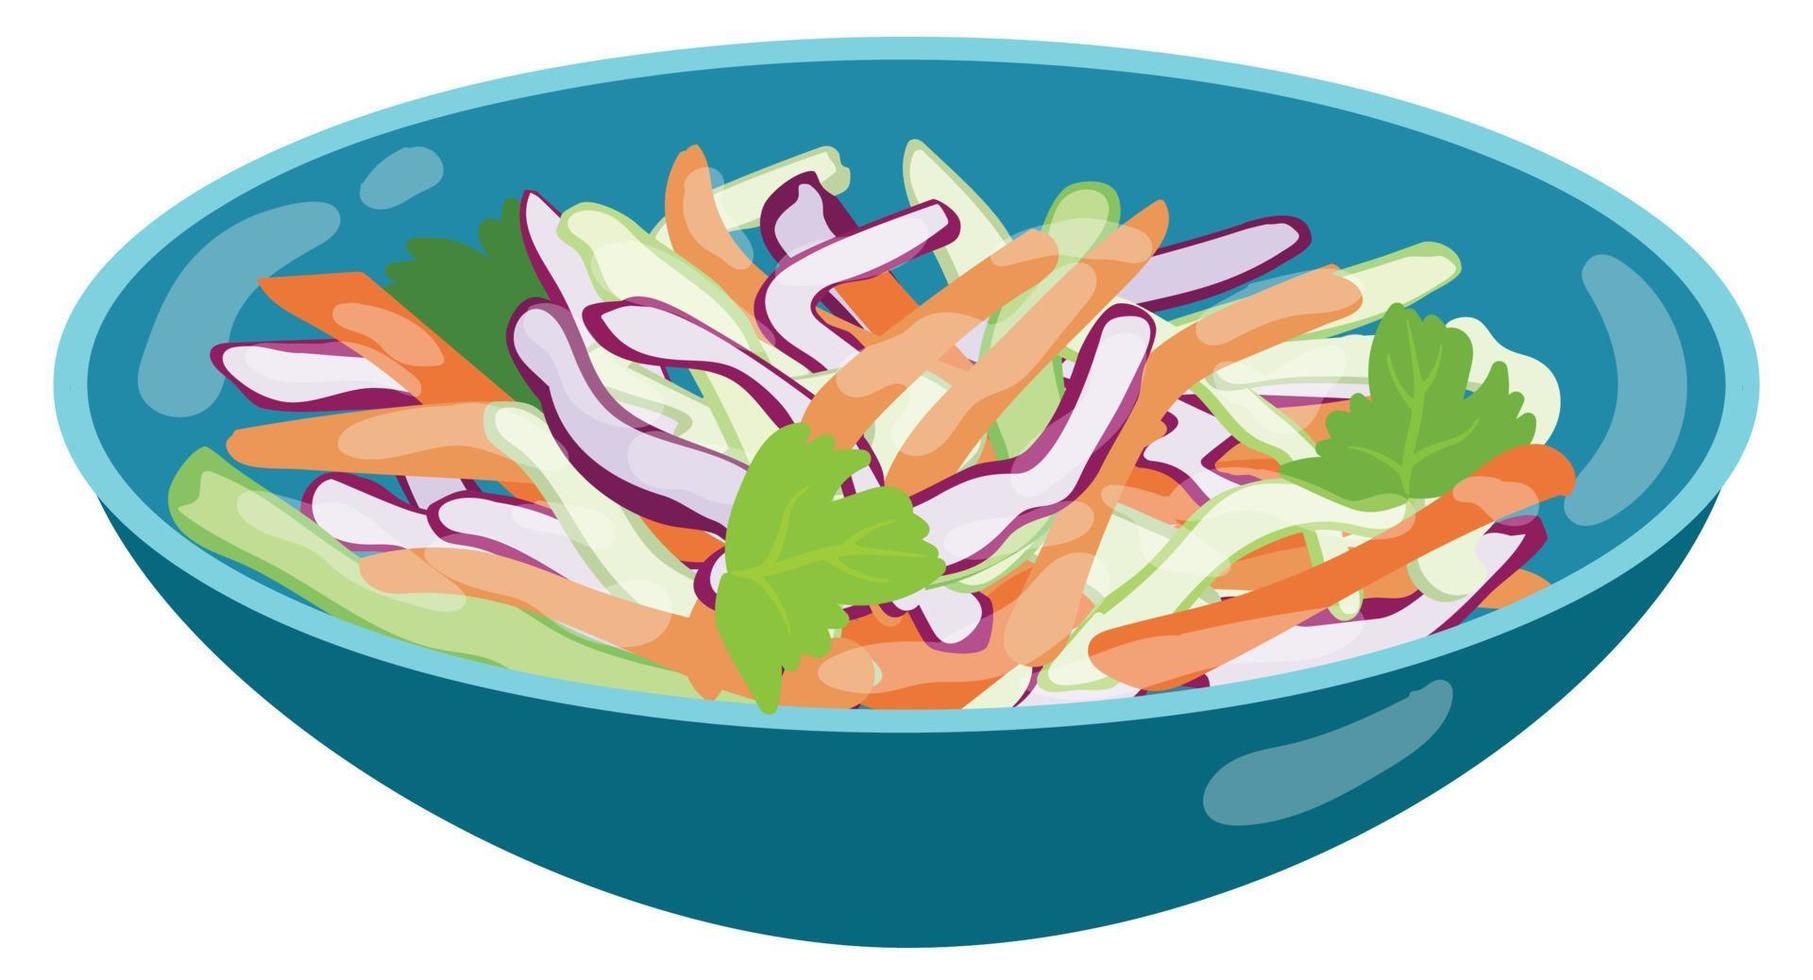 salade de chou sur la plaque bleue. illustration vectorielle dessinés à la main. adapté au site Web, aux autocollants, aux cartes postales, au menu. vecteur